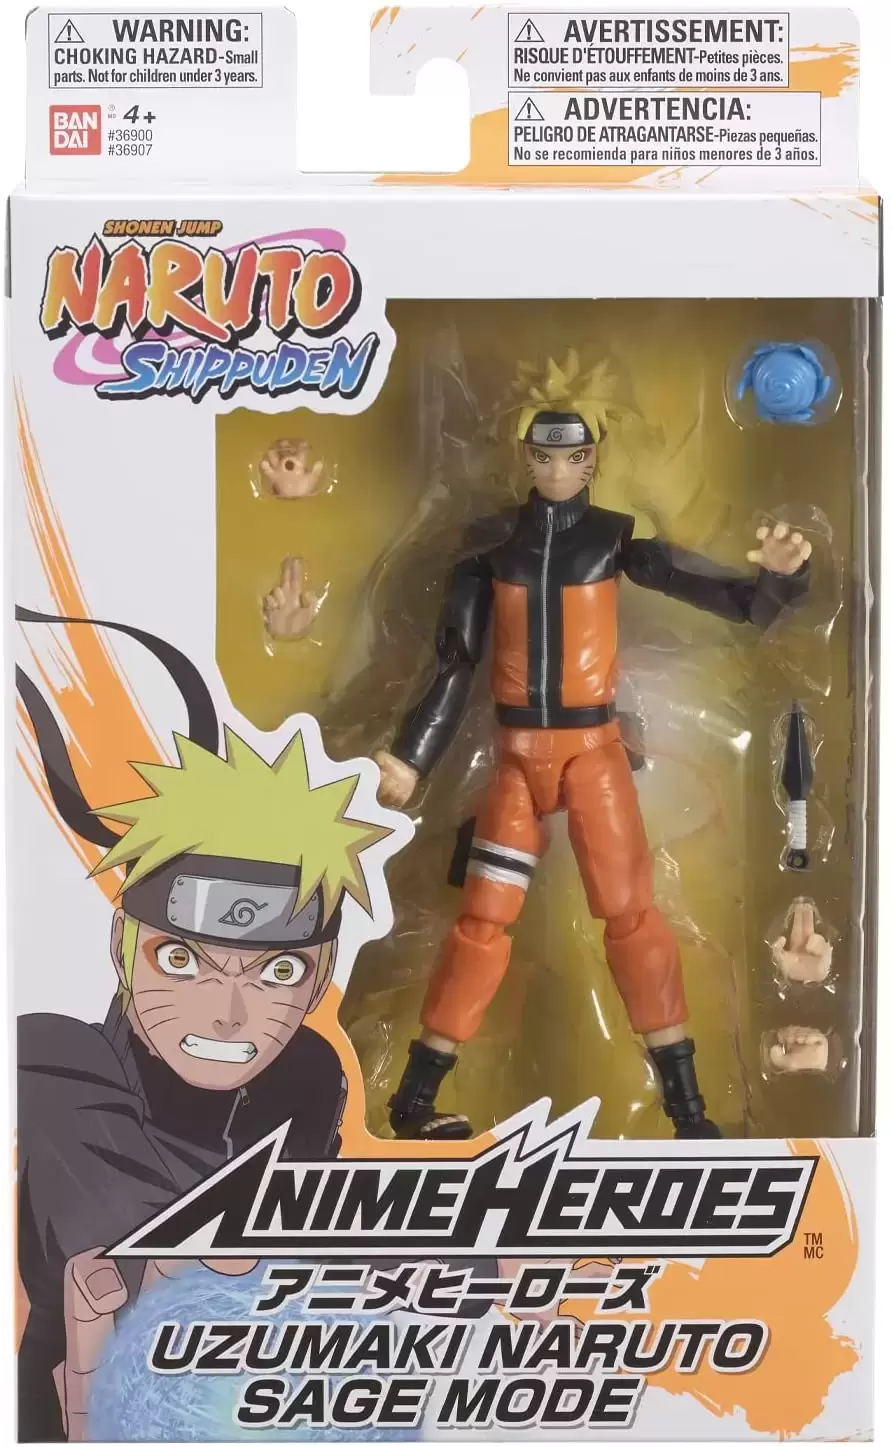 Anime Heroes - Bandai - Naruto Shippuden - Uzumaki Naruto Sage Mode